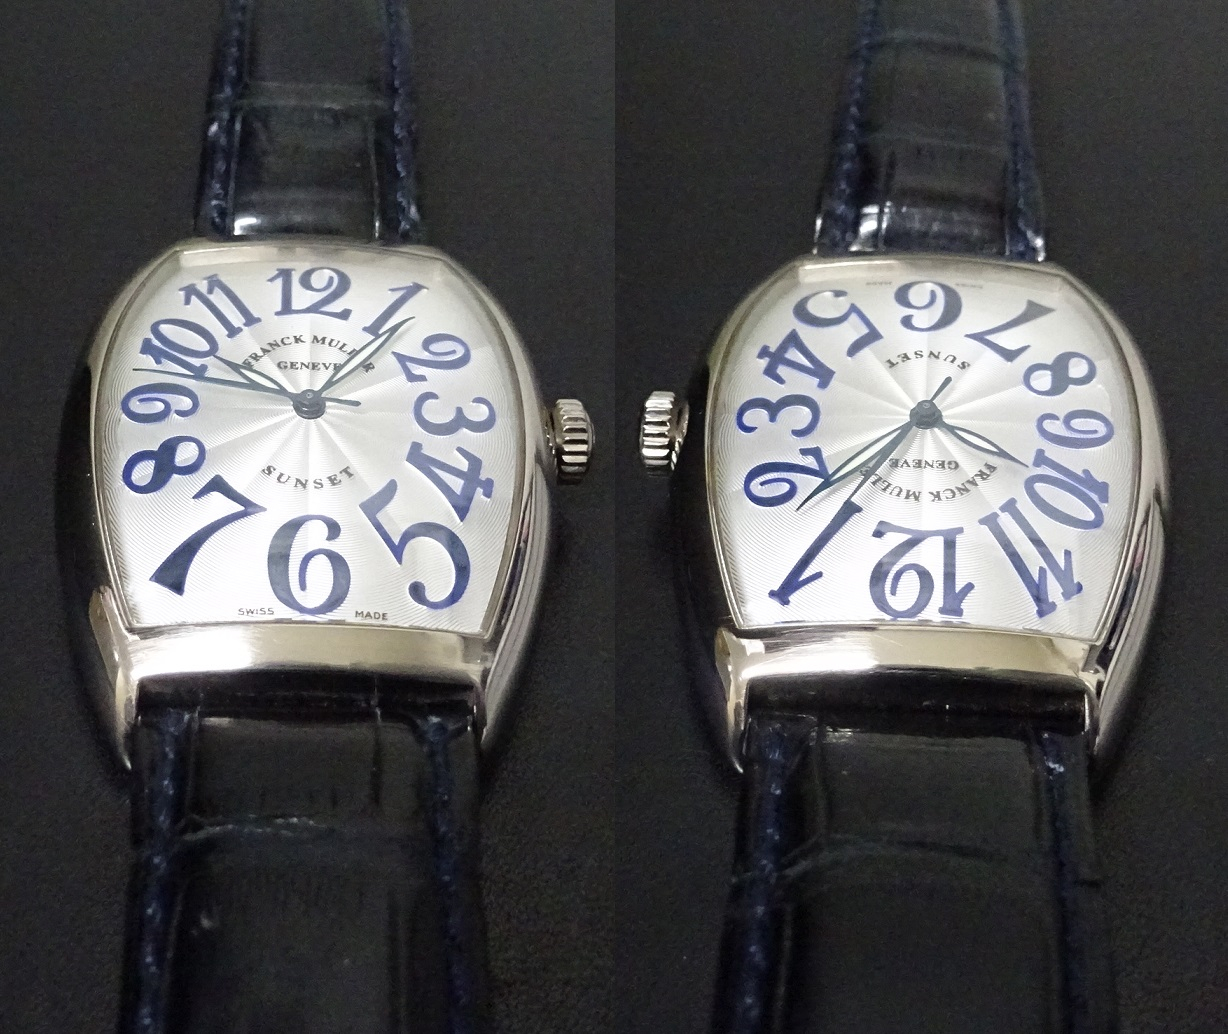 フランク・ミュラー FRANCK MULLER トノウカーベックス サンセット 6850 SC SUNSET K18ホワイトゴールド メンズ 腕時計